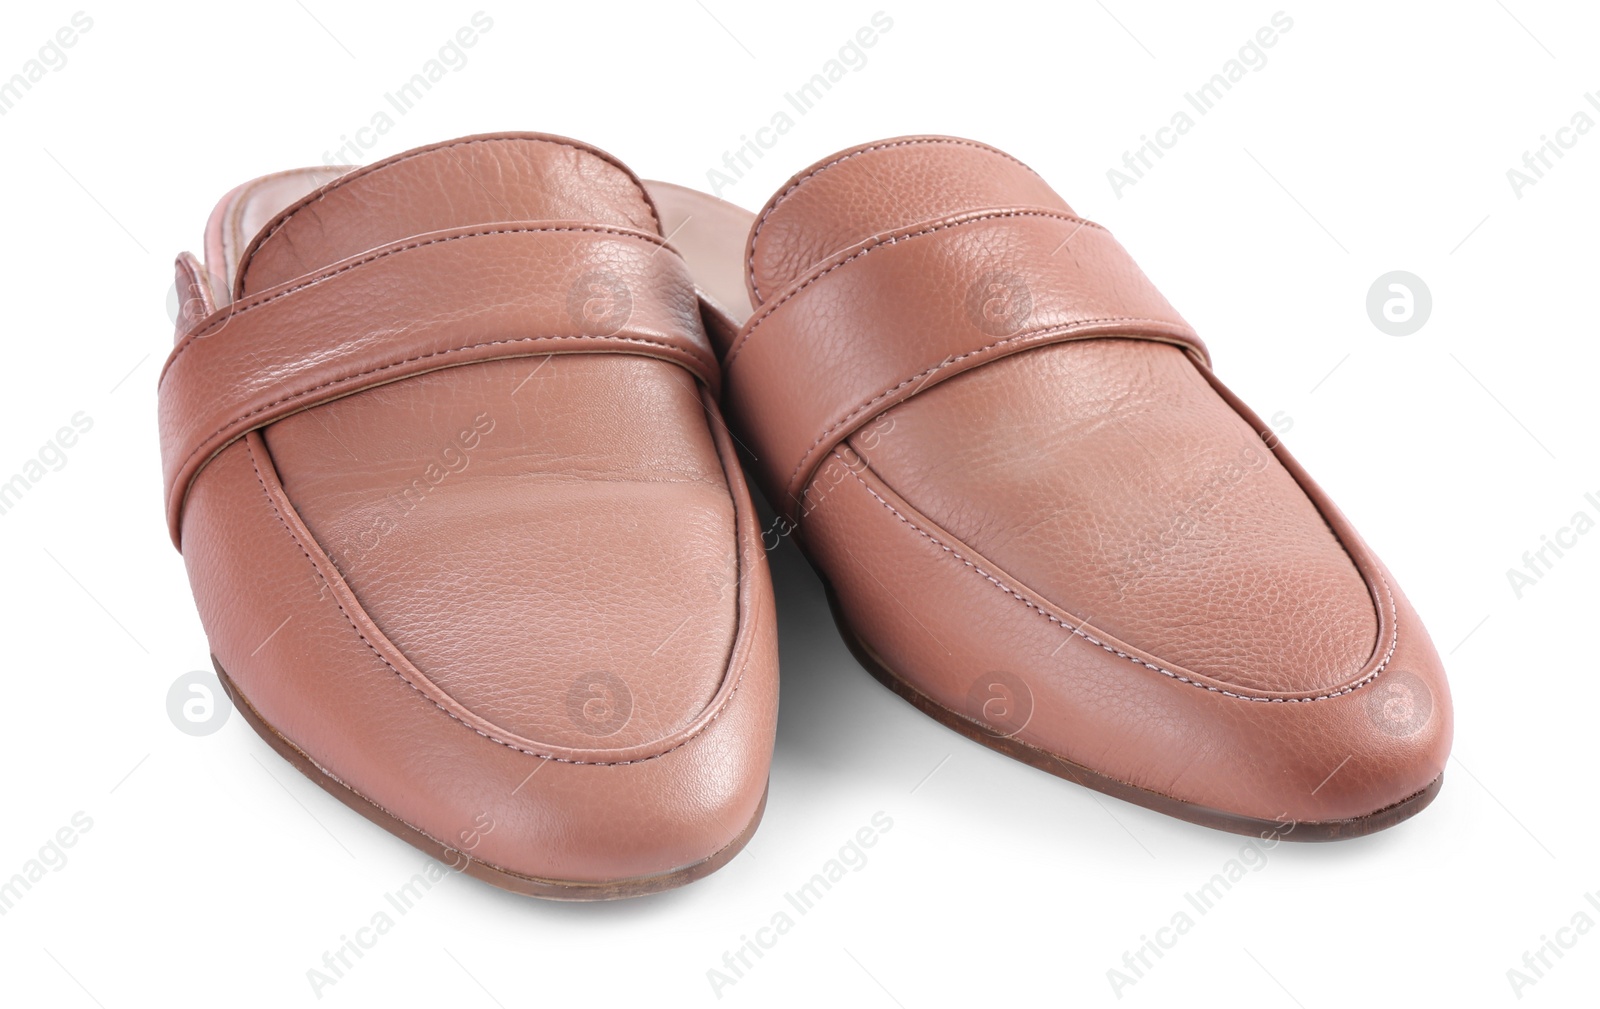 Photo of Stylish elegant leather shoes isolated on white